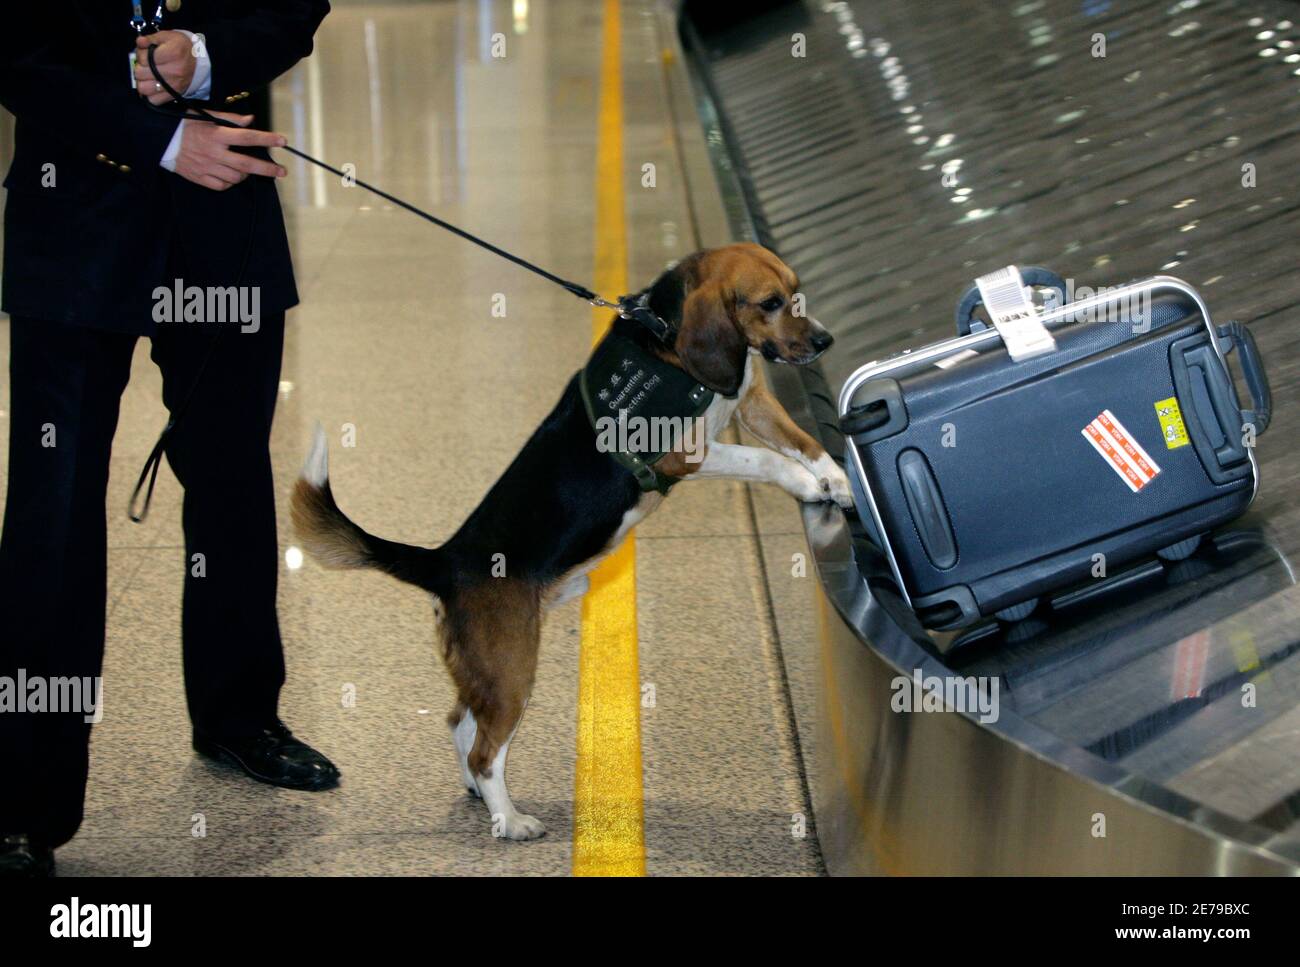 Un chien sniffer vérifie un bagage à l'aéroport international de Beijing Capital le 28 avril 2009. L'Organisation mondiale de la santé ne recommande pas de restrictions de voyage ni de fermetures de frontières pour lutter contre la grippe porcine, a déclaré un porte-parole mardi. Les personnes infectées peuvent ne pas présenter de symptômes à l'aéroport ou lorsqu'elles atteignent un poste frontalier, de sorte que les limitations de voyage comme celles imposées pendant l'épidémie de SRAS sont inefficaces, a déclaré le porte-parole Gregory Hartl. REUTERS/Jason Lee (SOCIÉTÉ CHINOISE DE LA SANTÉ) Banque D'Images